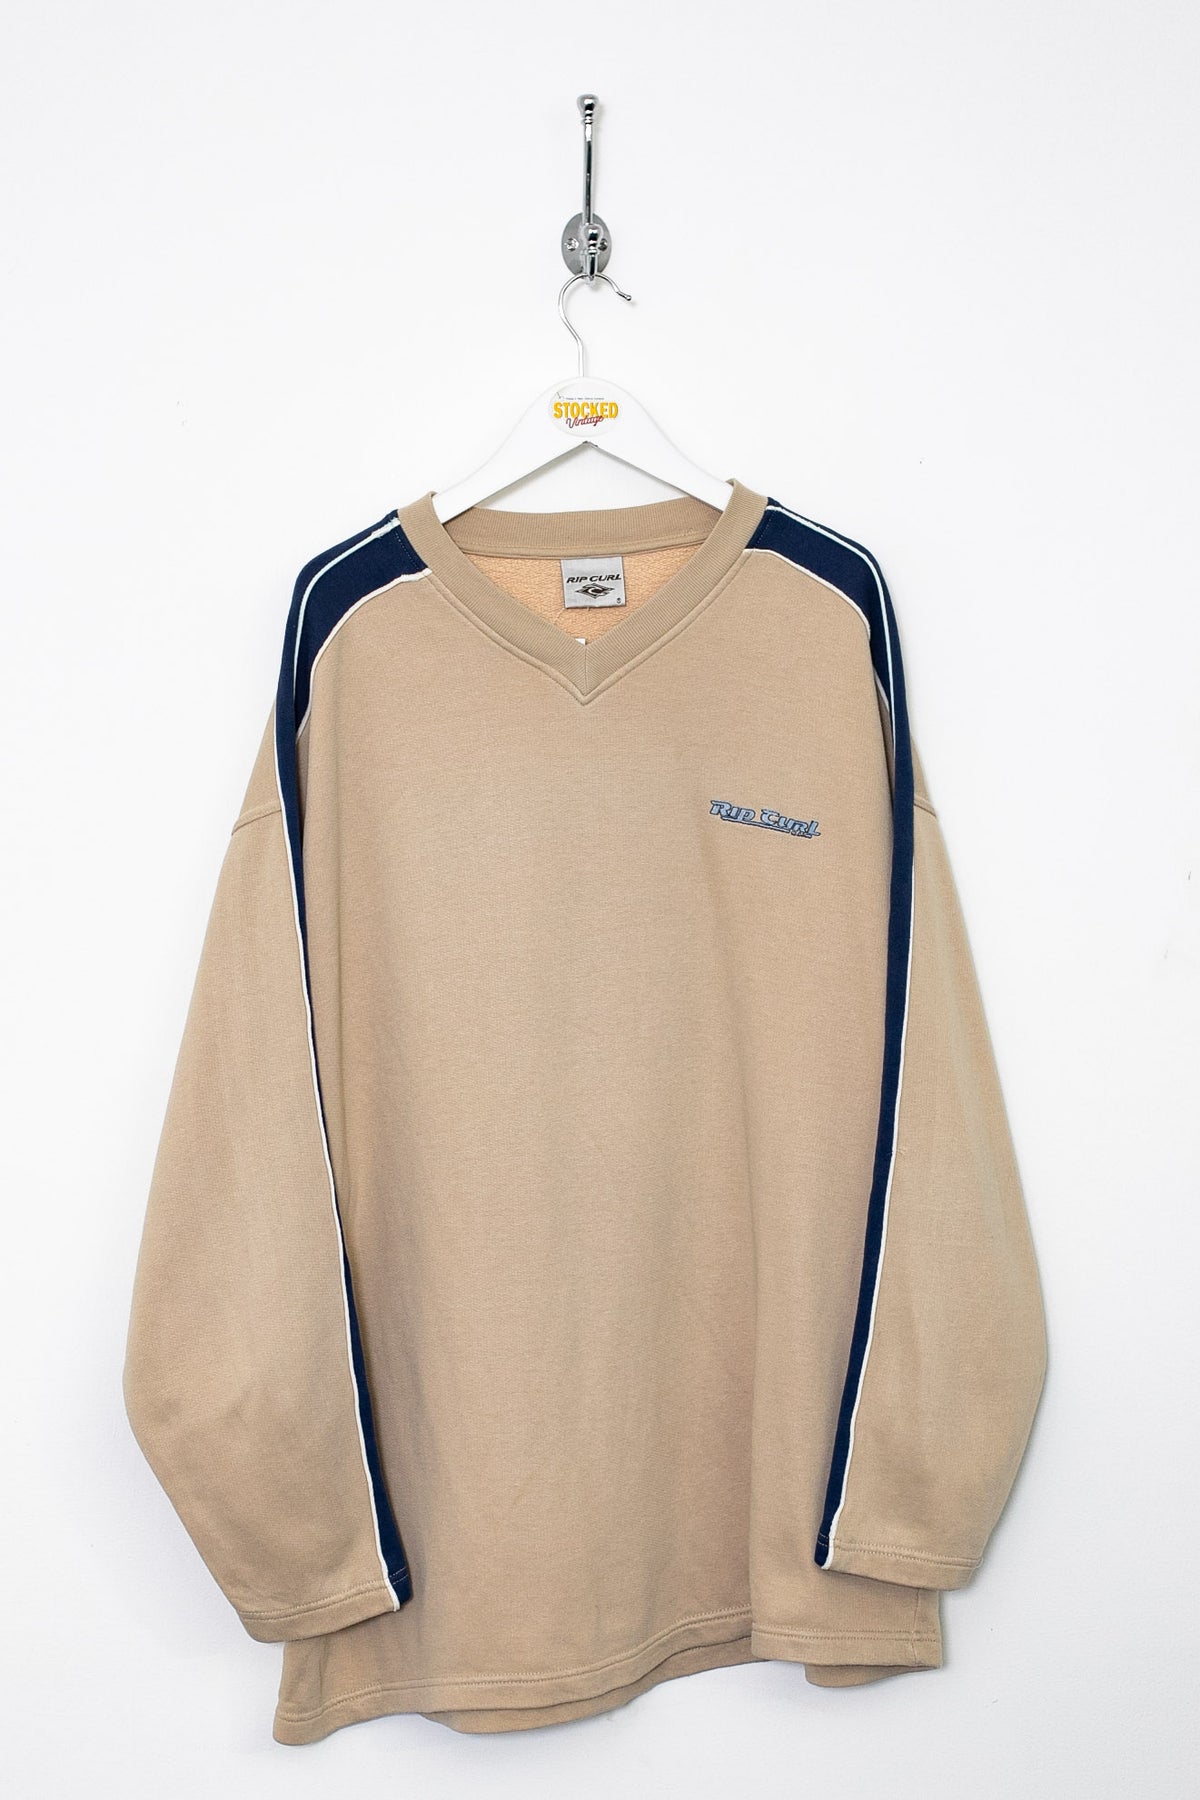 00s Ripcurl Sweatshirt (XL)